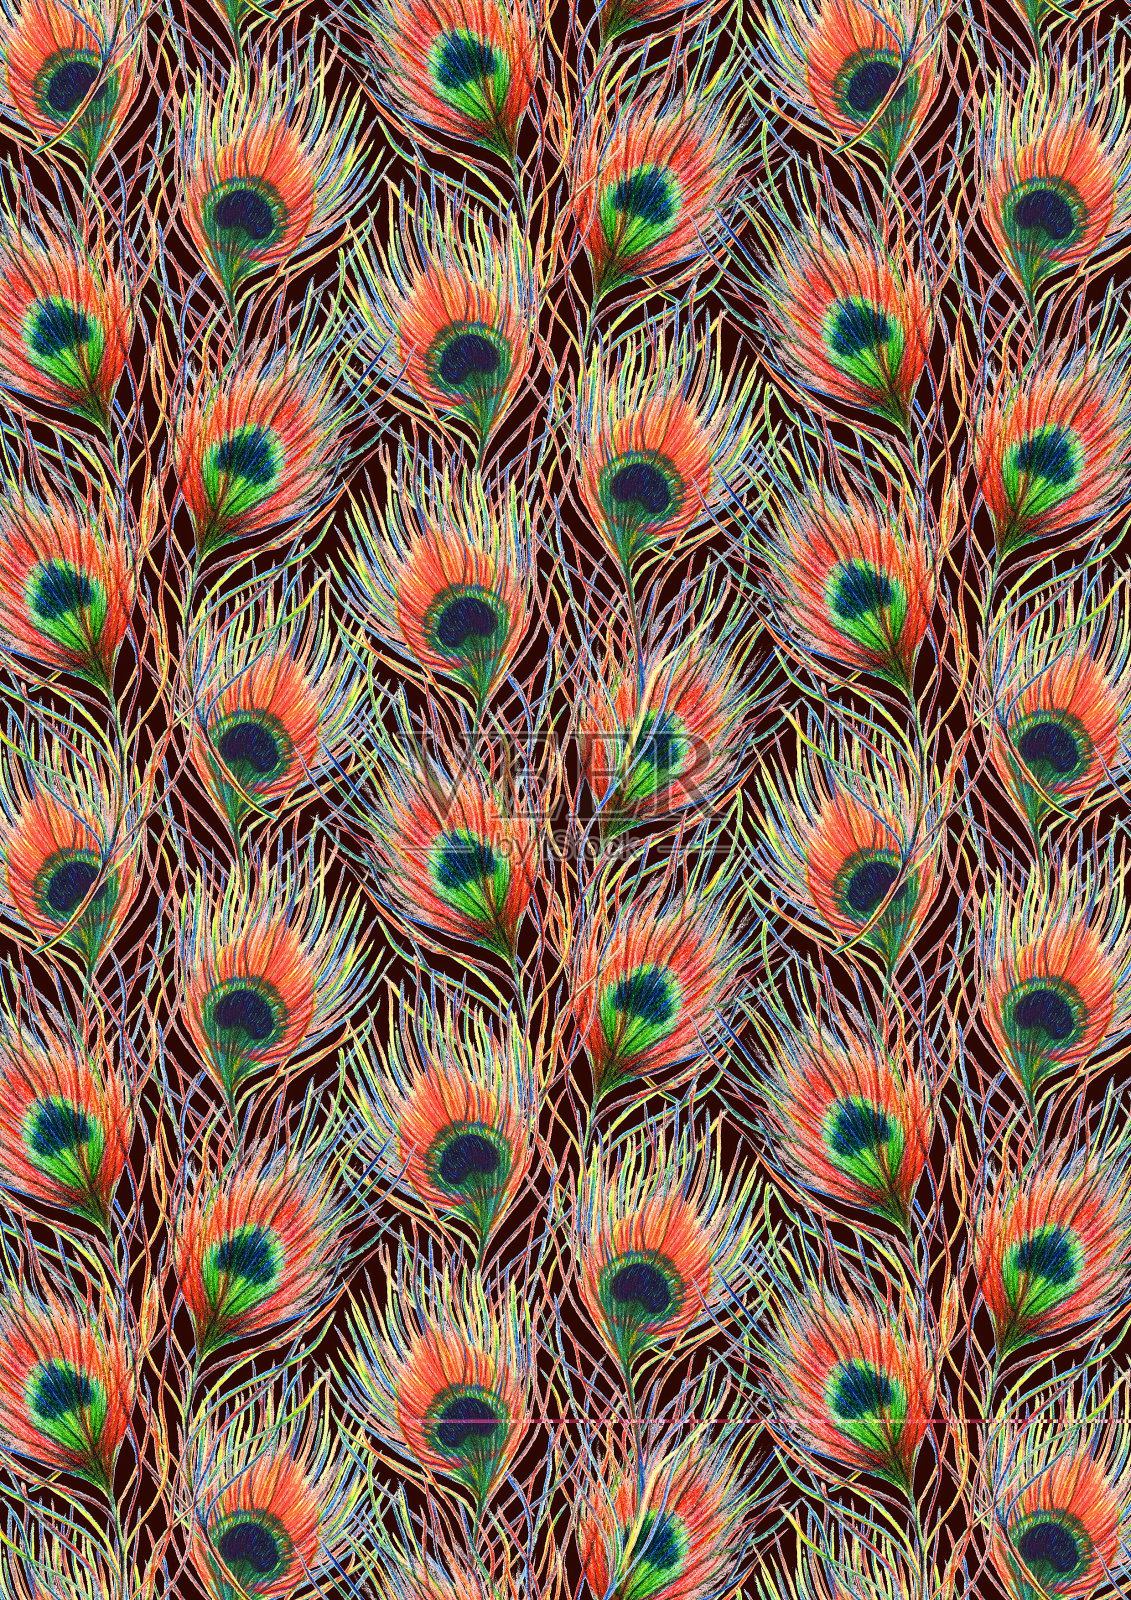 彩虹色彩丰富的孔雀鸟羽毛背景图案纹理插画图片素材